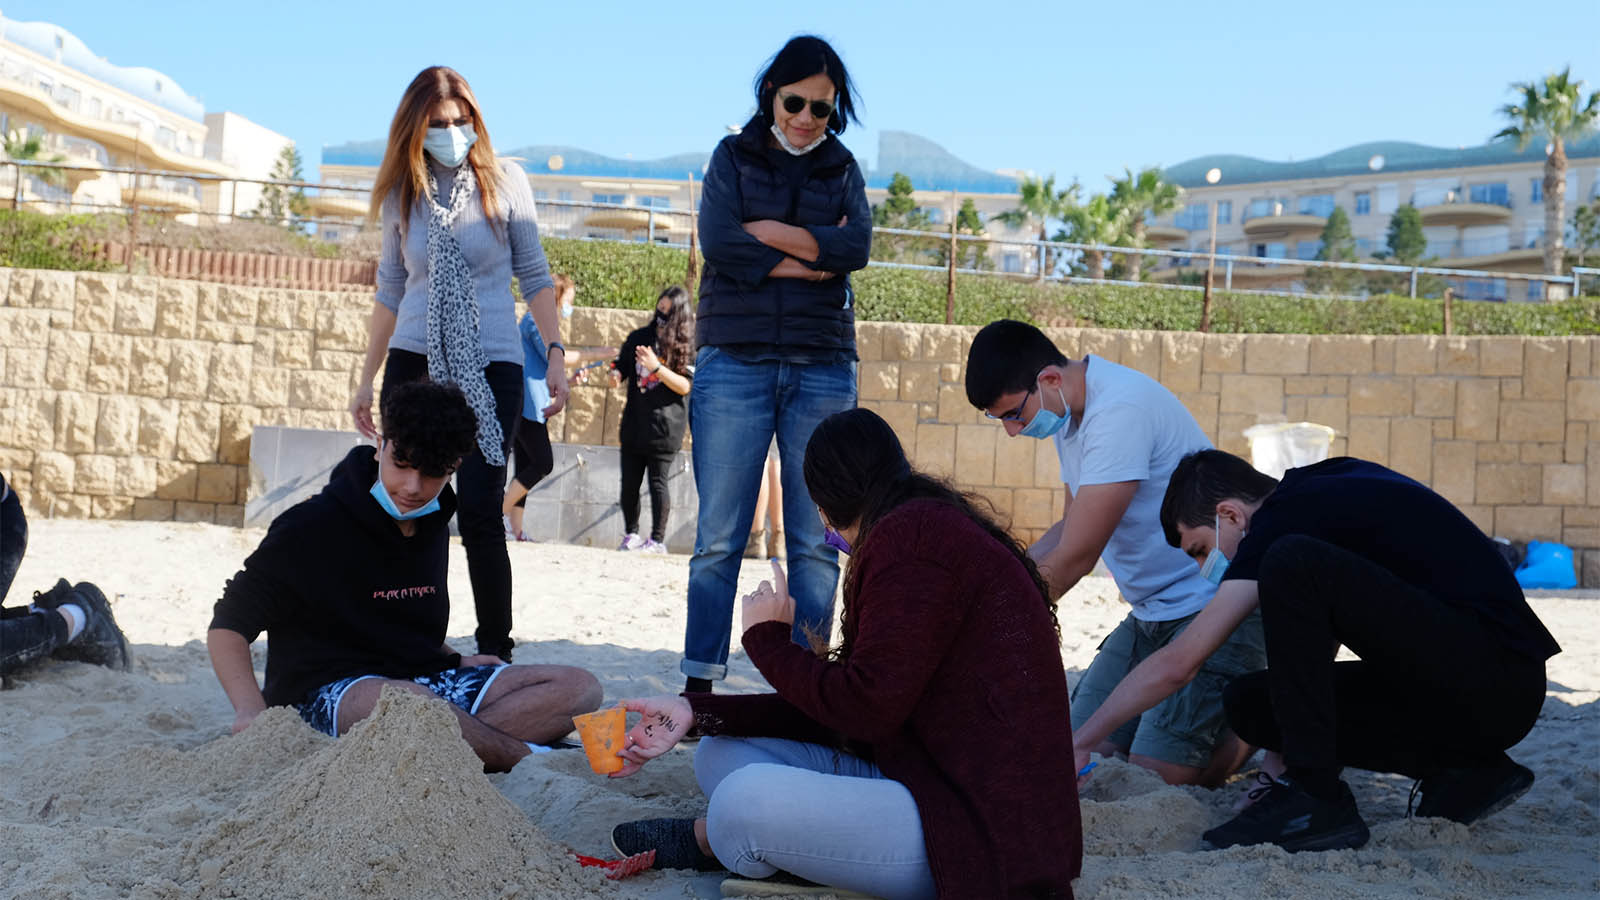 תלמידי כיתת י' מופת בתיכון חדש בית אליעזר בחדרה נפגשים לפיסול בחול בחוף הים של גבעת אולגה (צילום: דוד טברסקי)